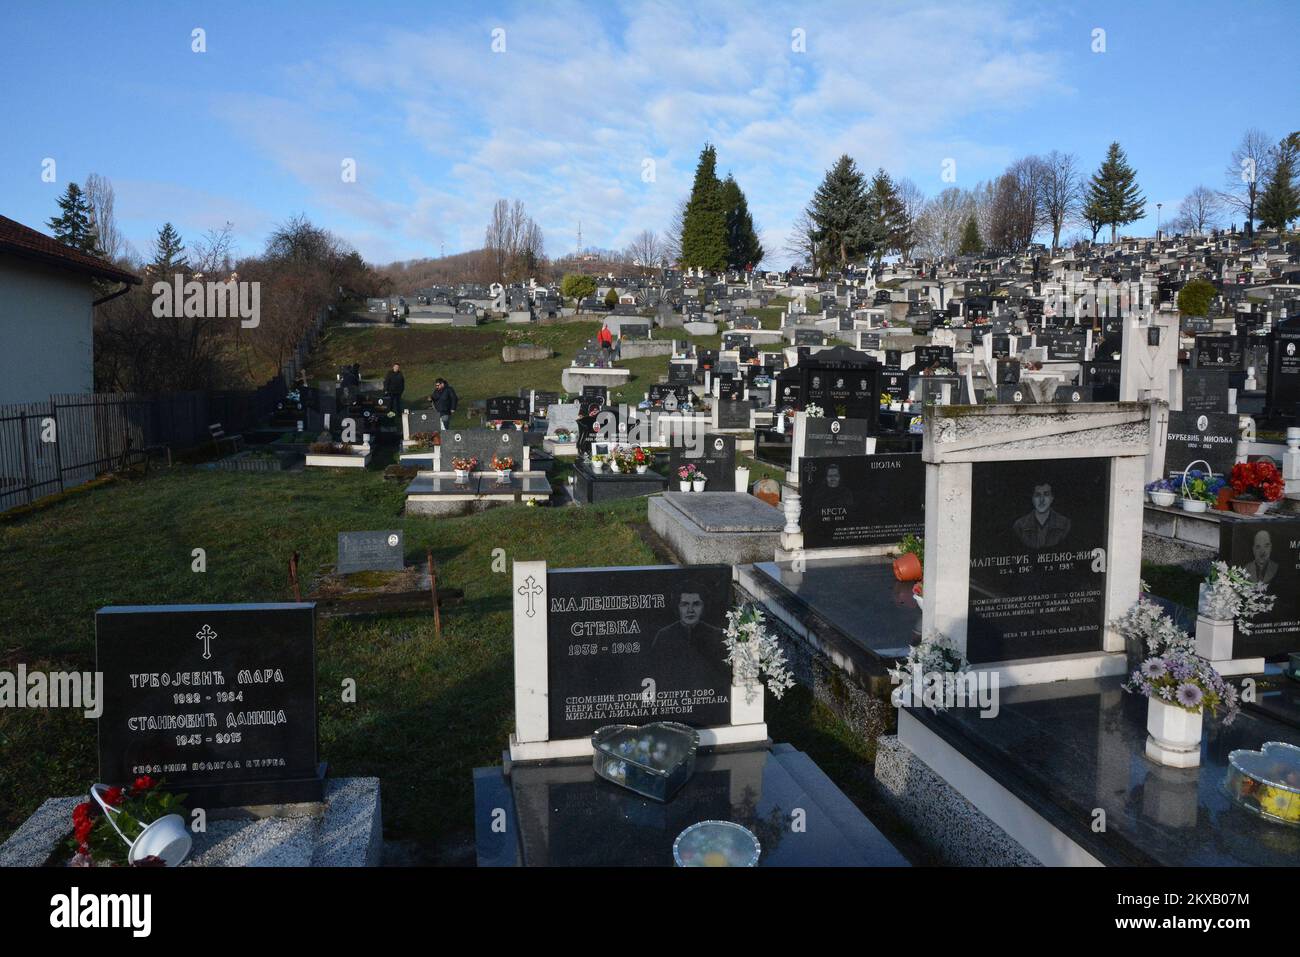 12.03.2019., Banja Luka, Bosnia-Erzegovina - i resti di uno studente bosniaco di 21 anni David Dragicevic, la cui morte irrisolta ha ispirato mesi di proteste contro una presunta copertura della polizia, sono stati esumati per poter essere sepolto in Austria.decine di bosniaci riuniti in un cimitero per dire l'ultimo saluto a David.David Dragicevic è morto Lo scorso marzo a Banja Luka in quella che la polizia ha descritto per la prima volta come suicidio, ma la famiglia ha insistito che fosse assassinato.la madre di David Dragicevic vive in Austria e vi sarà sepolto Foto: Ivica Galovic/PIXSELL Foto Stock